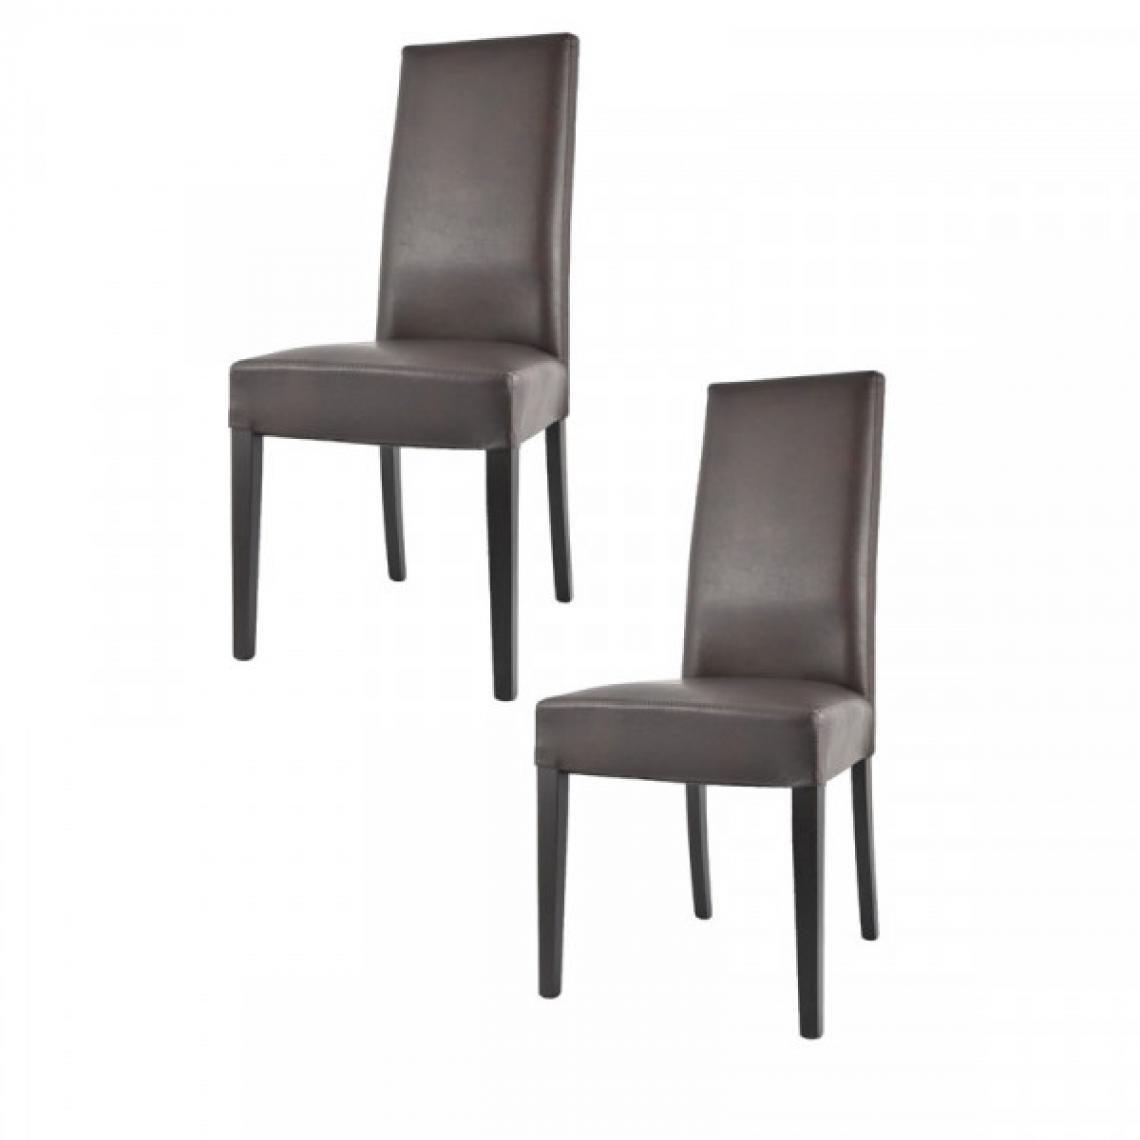 Dansmamaison - Duo de chaises en similicuir Marron - VENISE - L 54 x l 46 x H 99 cm - Chaises